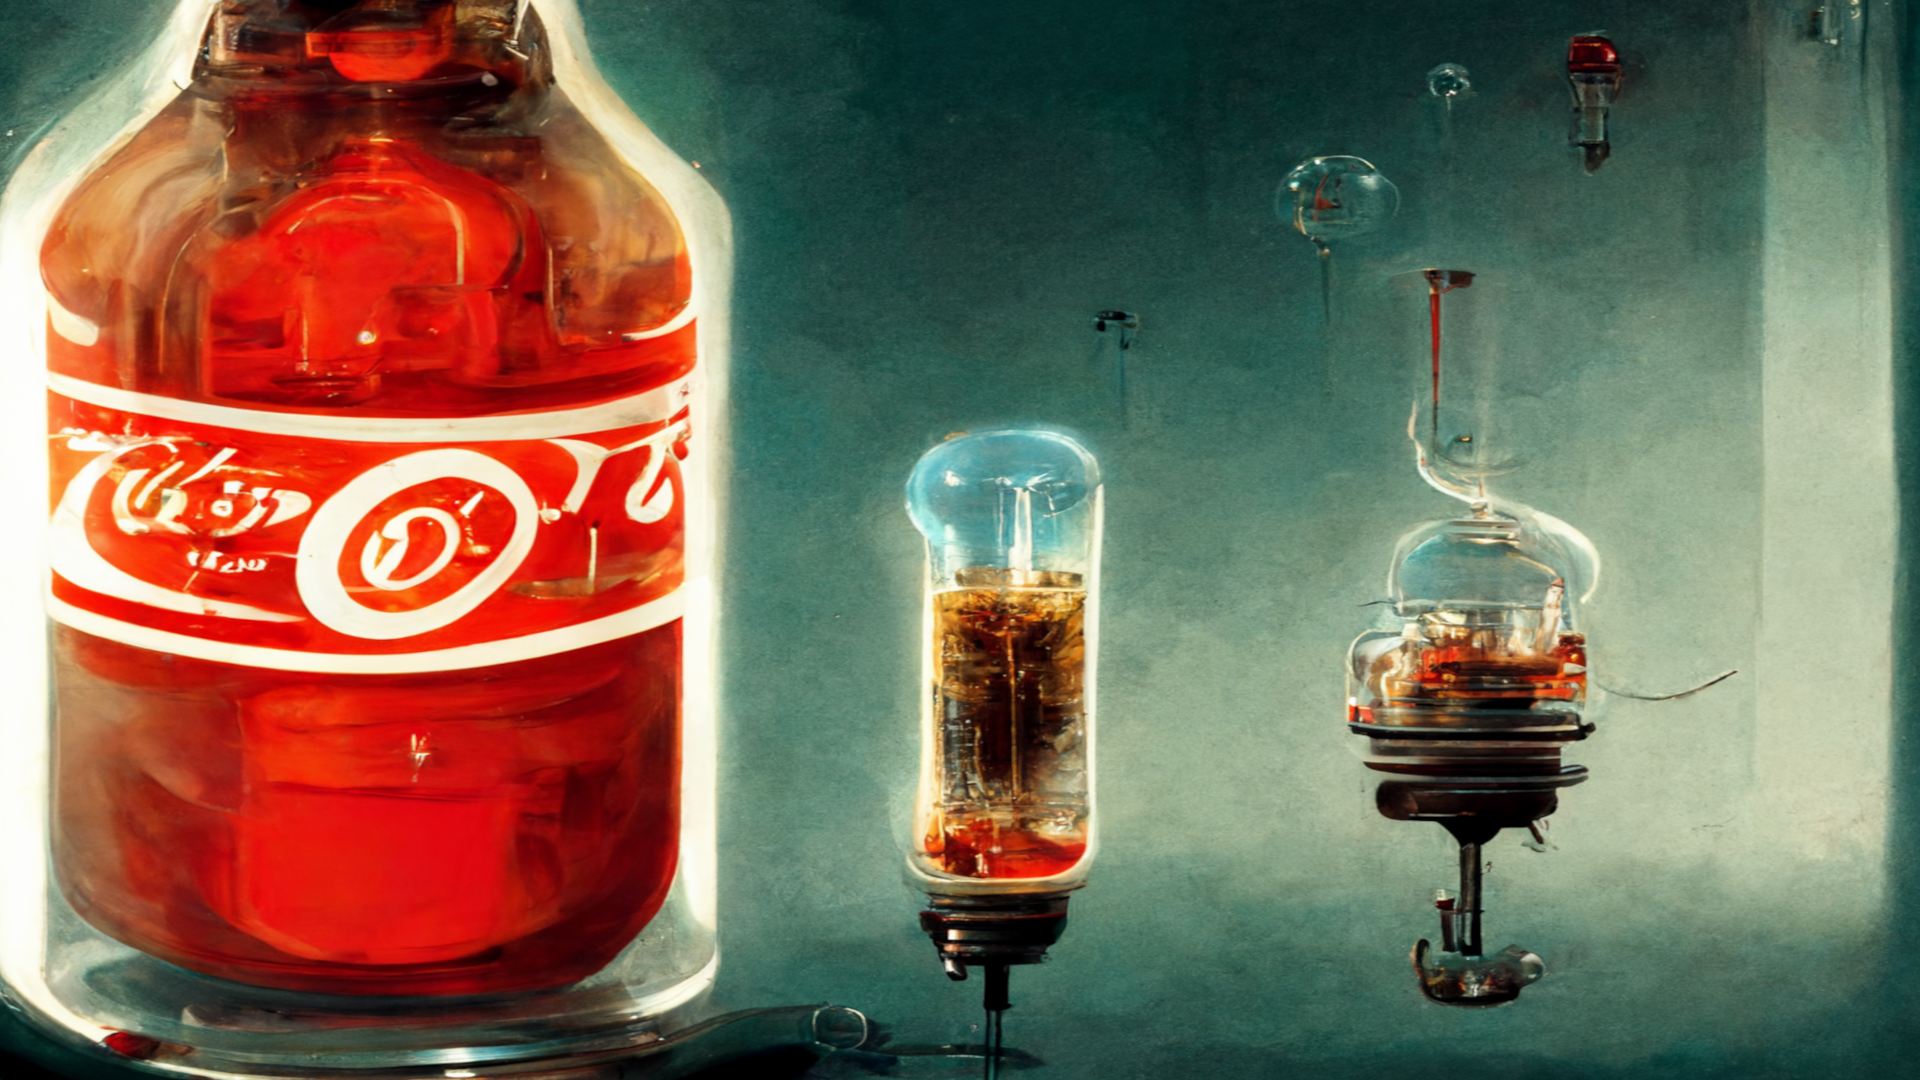 Coca Cola and Morphine